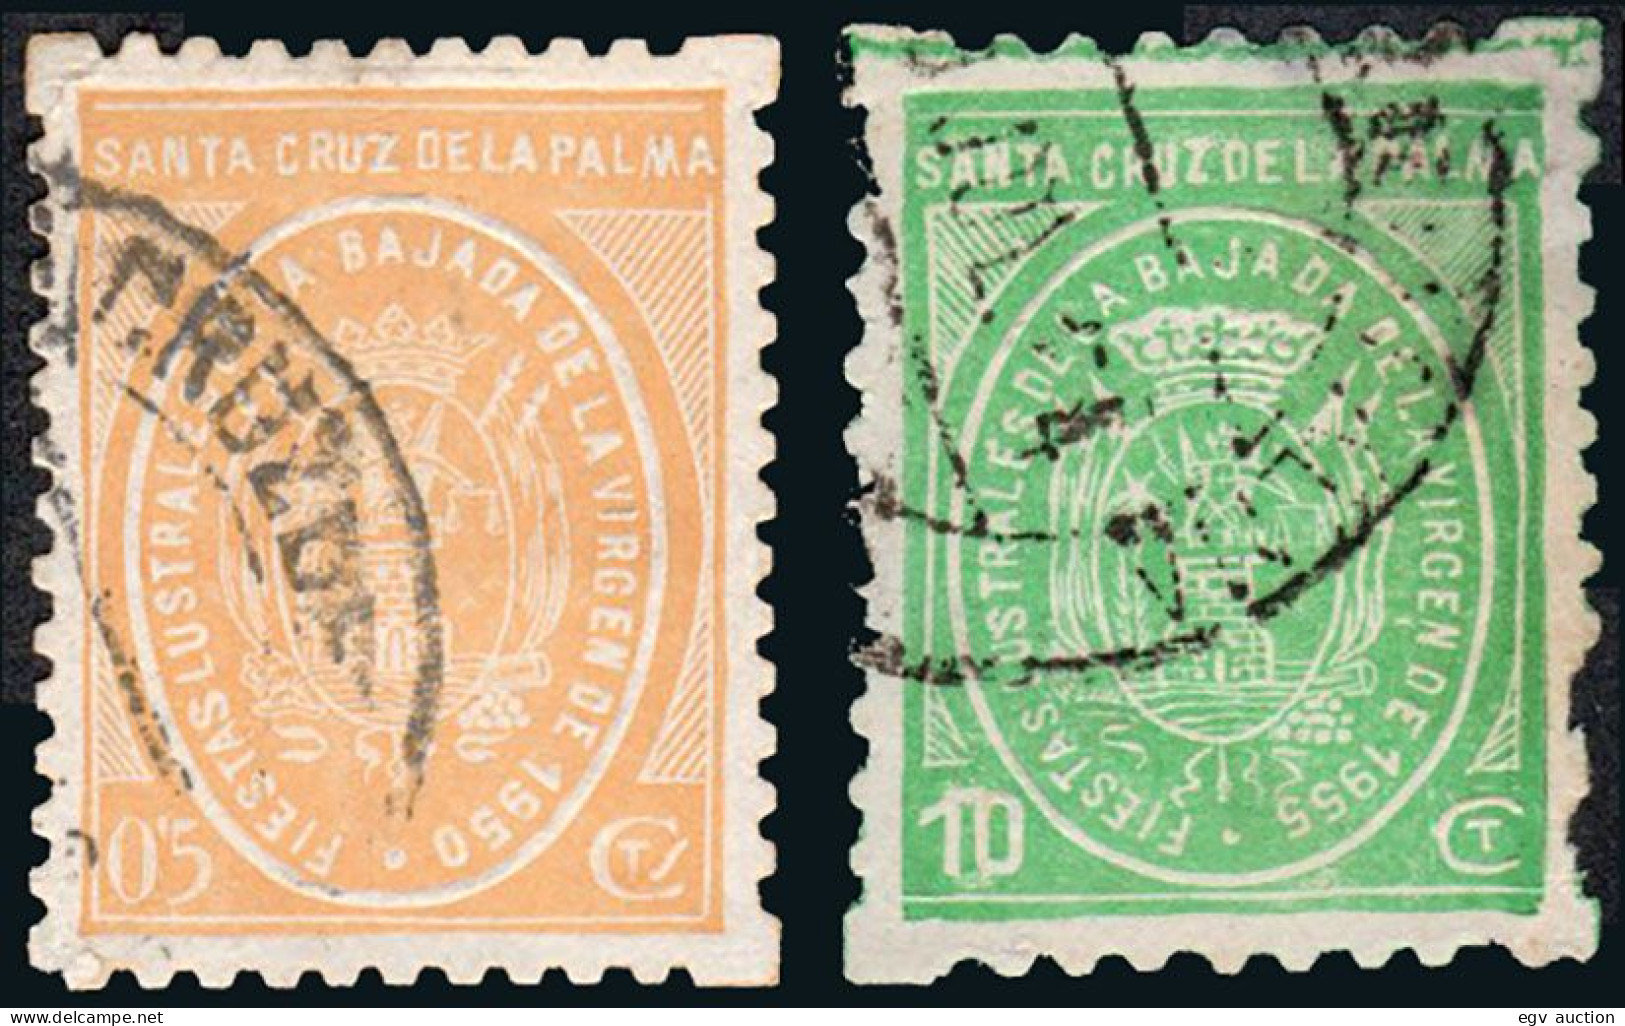 Canarias - Viñetas - O S/Cat - 2 Valores "Santa Cruz De La Palma - 5cts + 10 Cts. Bajada De La Virgen" - Used Stamps